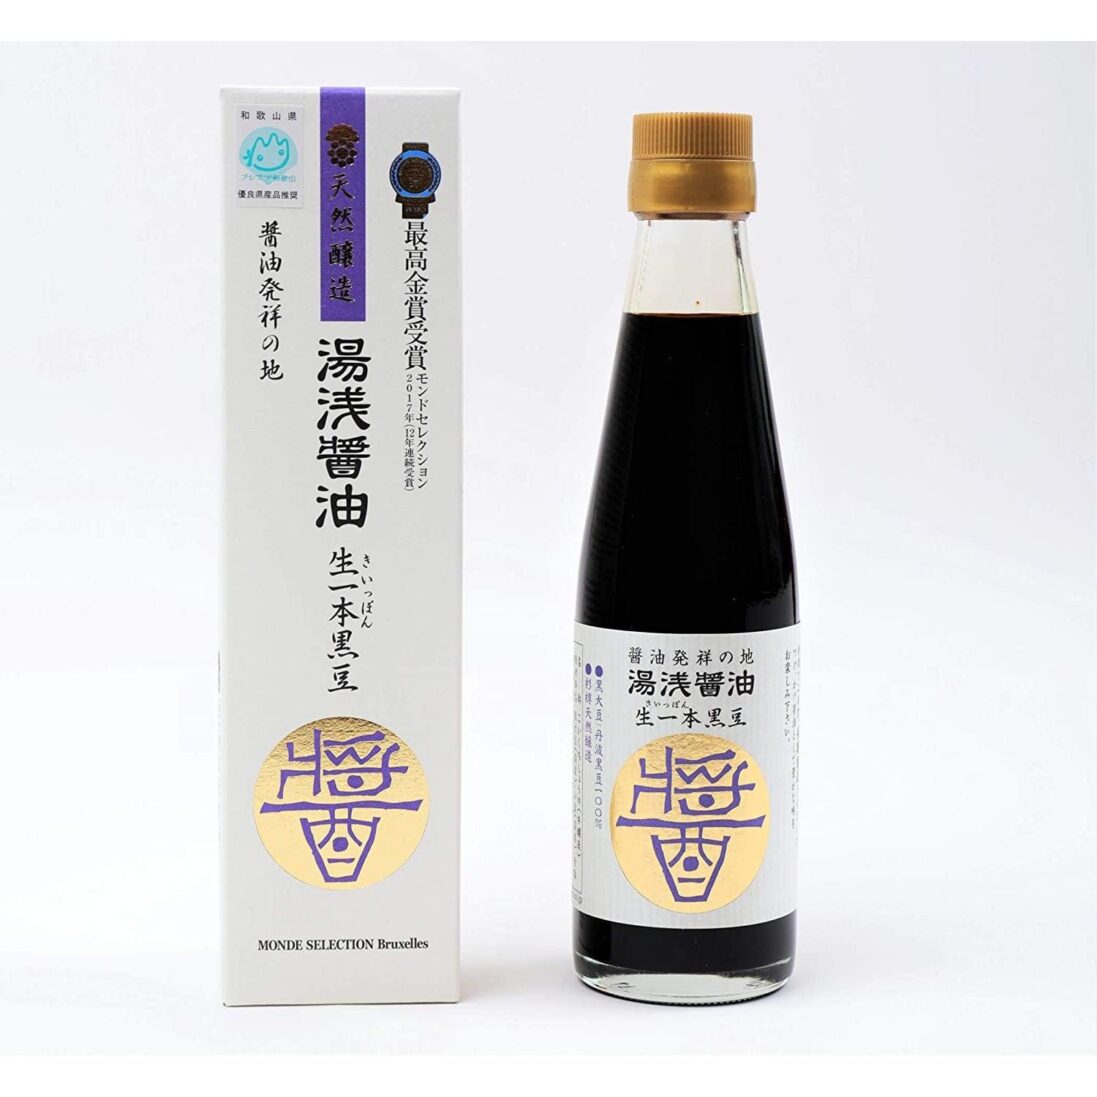 Yuasa-Kuromame-Shoyu-Japanese-Black-Soybean-Sauce-200ml-Japanese-Taste_2048x.jpg